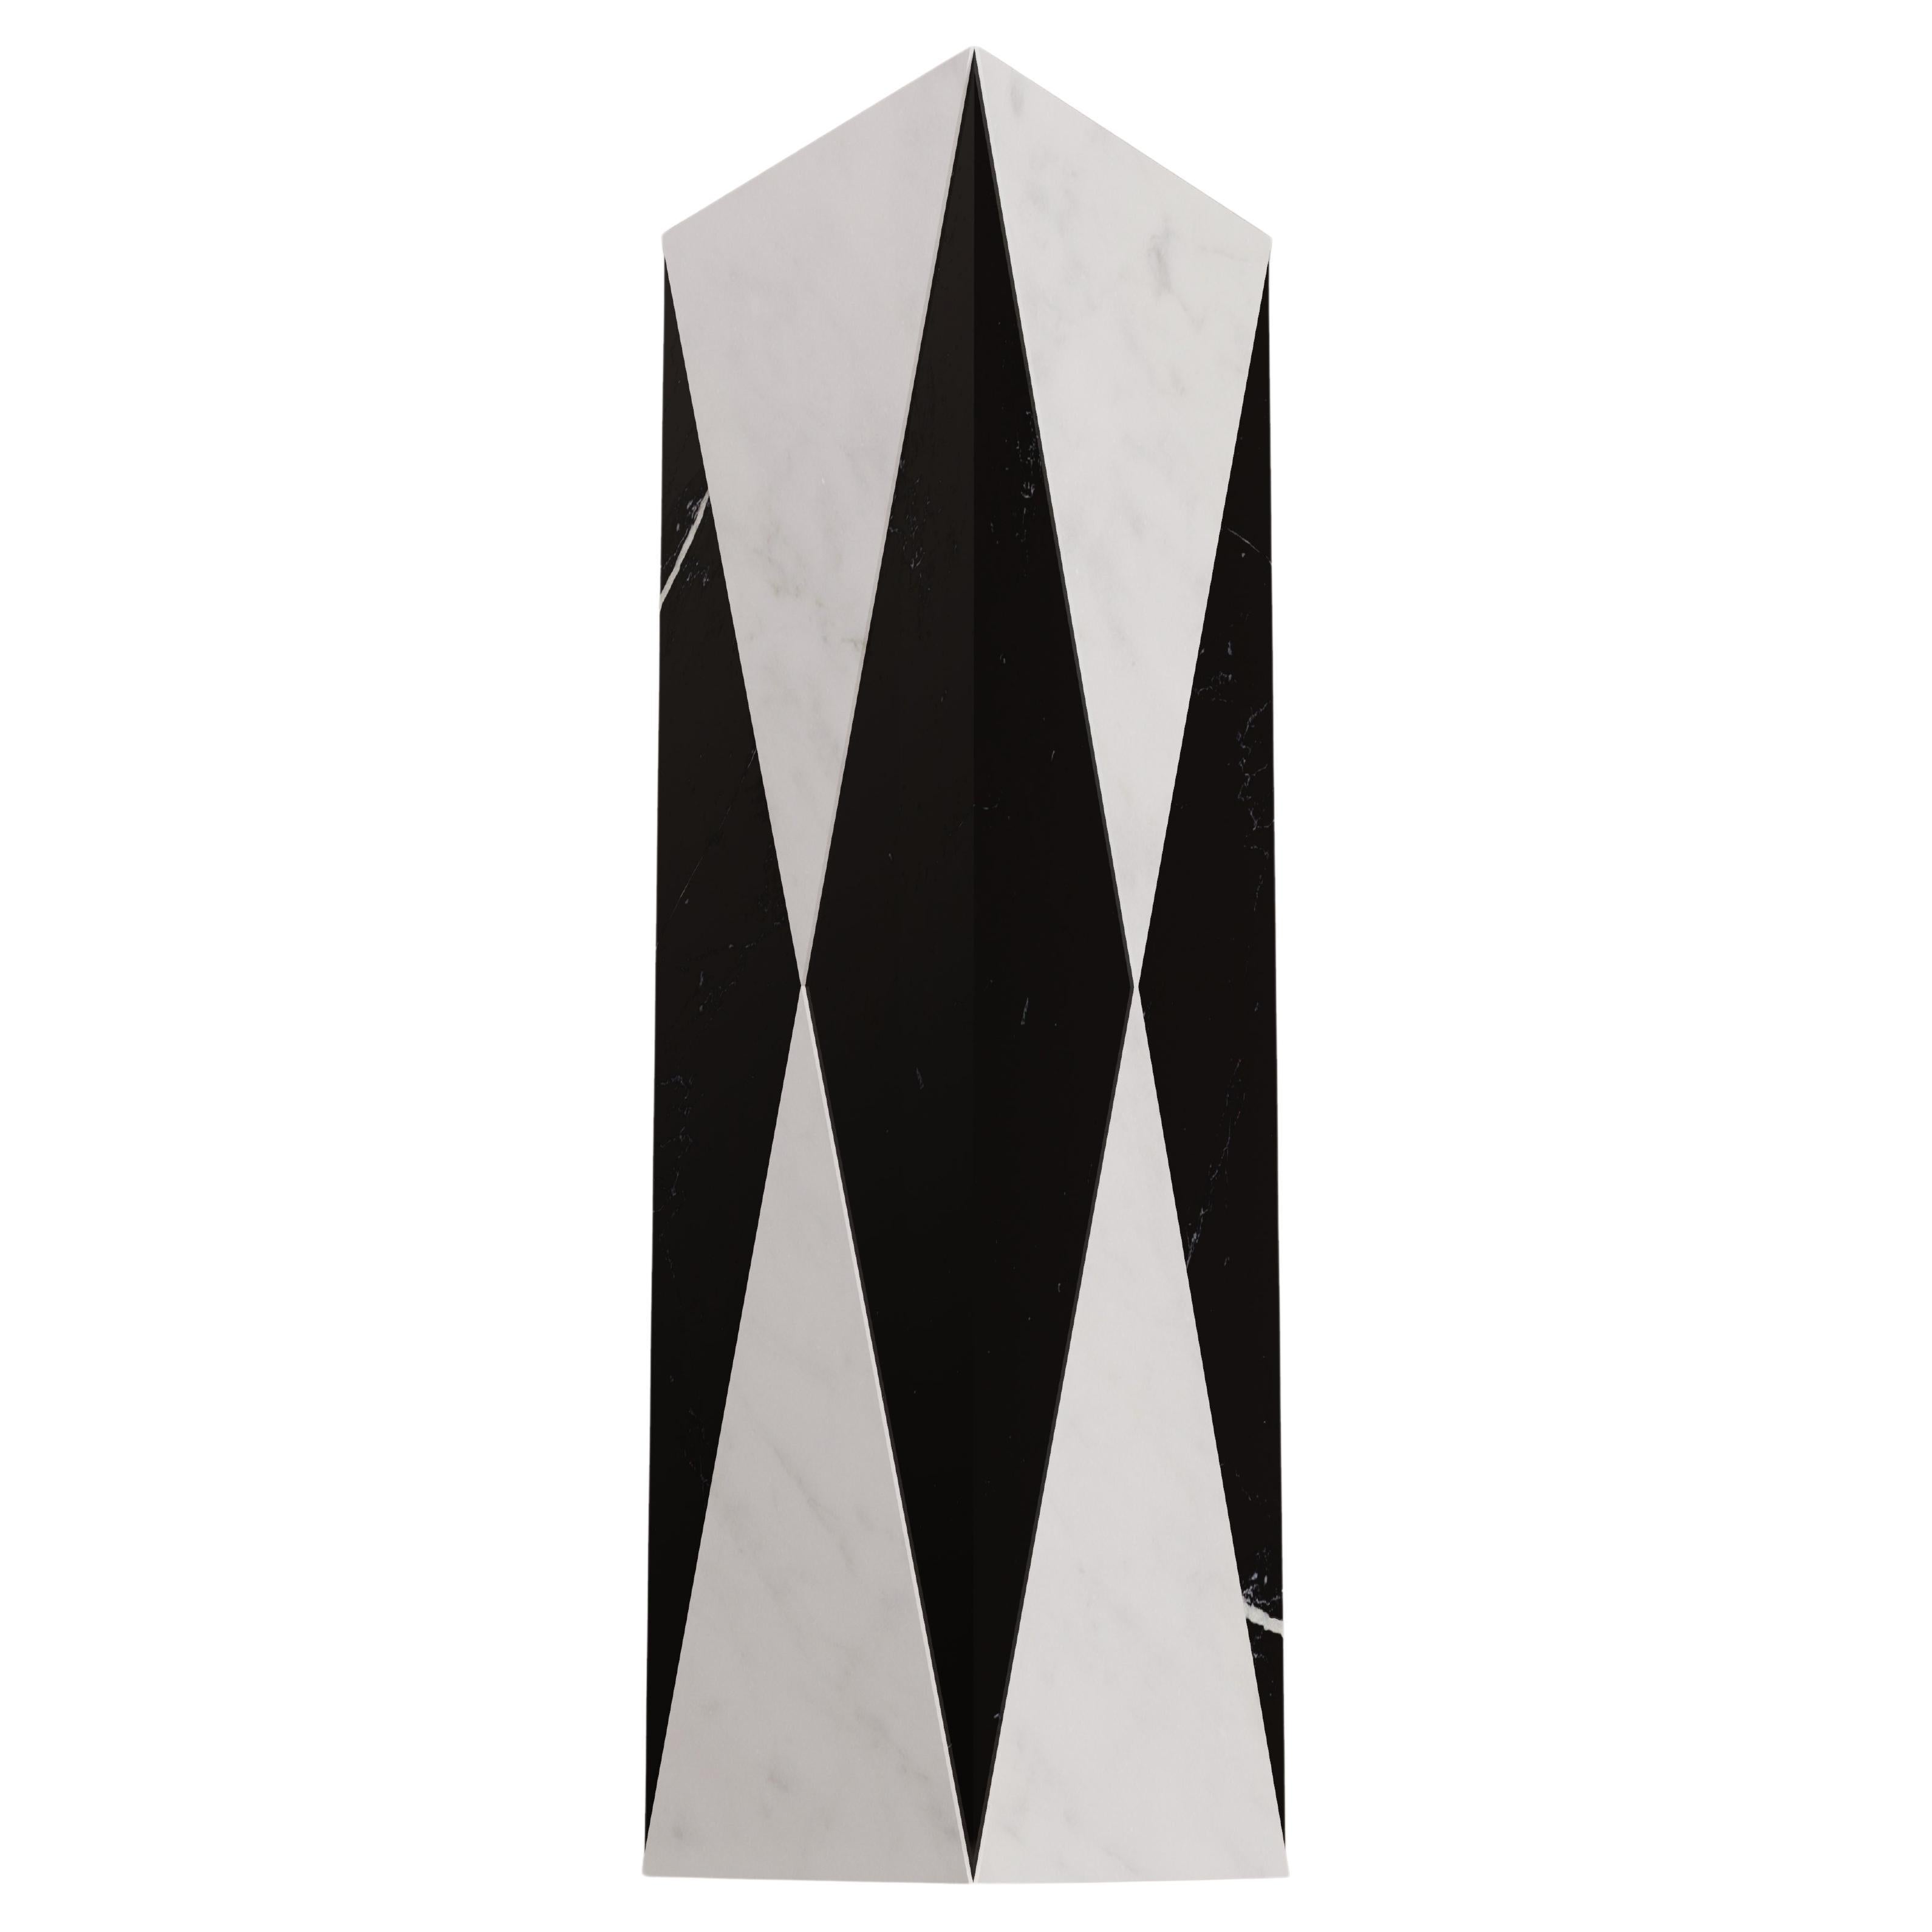 Dreieckige Vase aus weißem Carrara-Marmor und schwarzem Marquina von Carcino Design